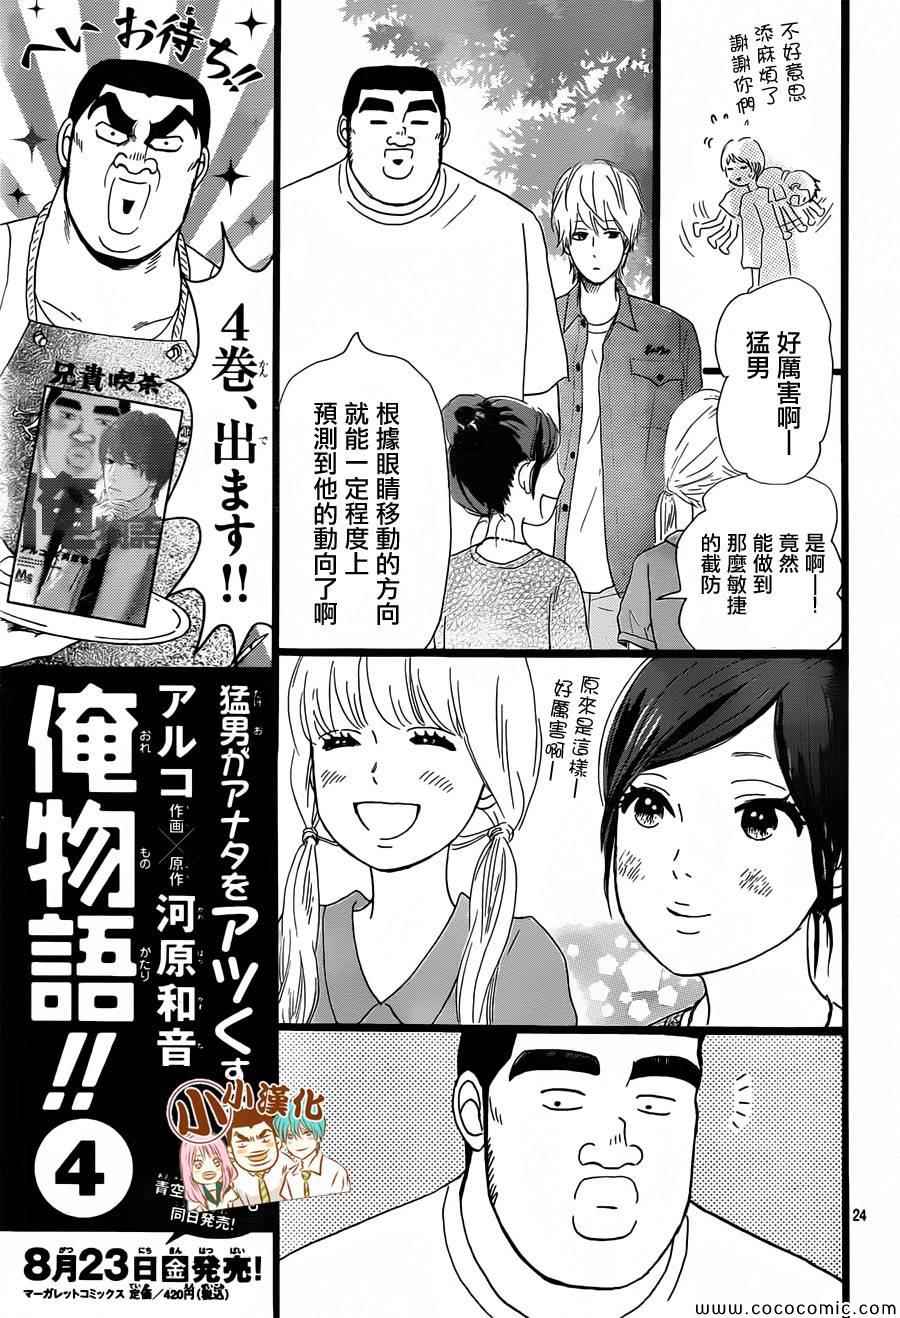 俺物語漫畫015集 第24頁 俺物語015集劇情 看漫畫